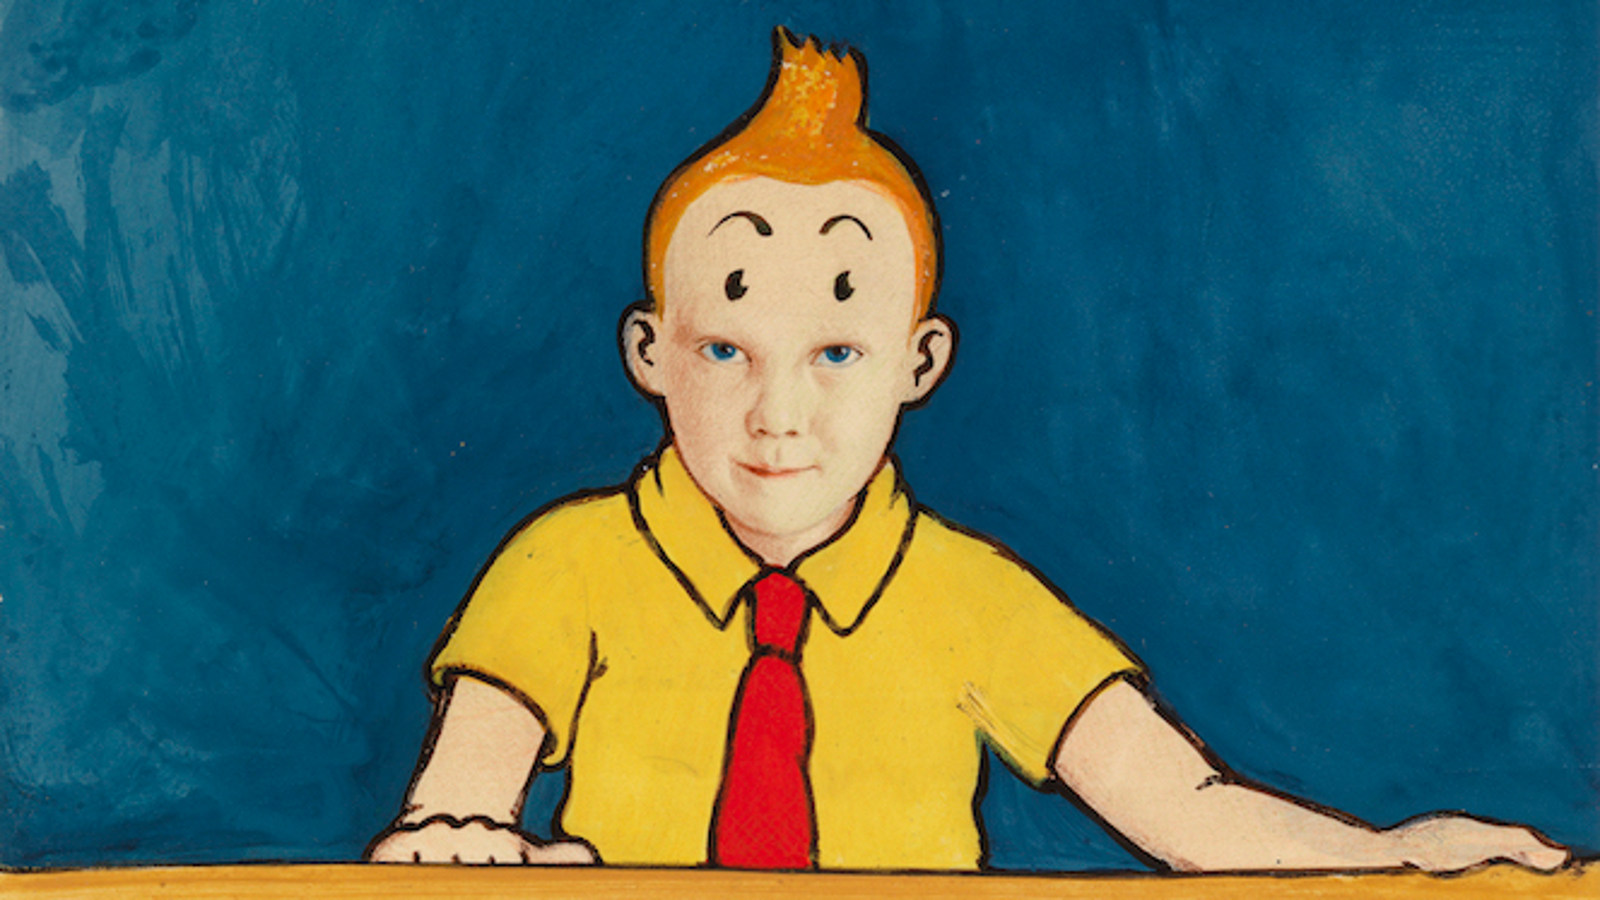 Kuvassa on Olli Lyytikäisen maalaama Hergé, jossa on Tintin kuva. Kuvassa Tintti istuu pöydän ääressä ja se on keltainen.  Tausta on sininen.  Tintillä keltainen kauluspaita ja punainen kravatti. Tintillä on ruskea pystytukka ja nojaa käsillään pöytään.